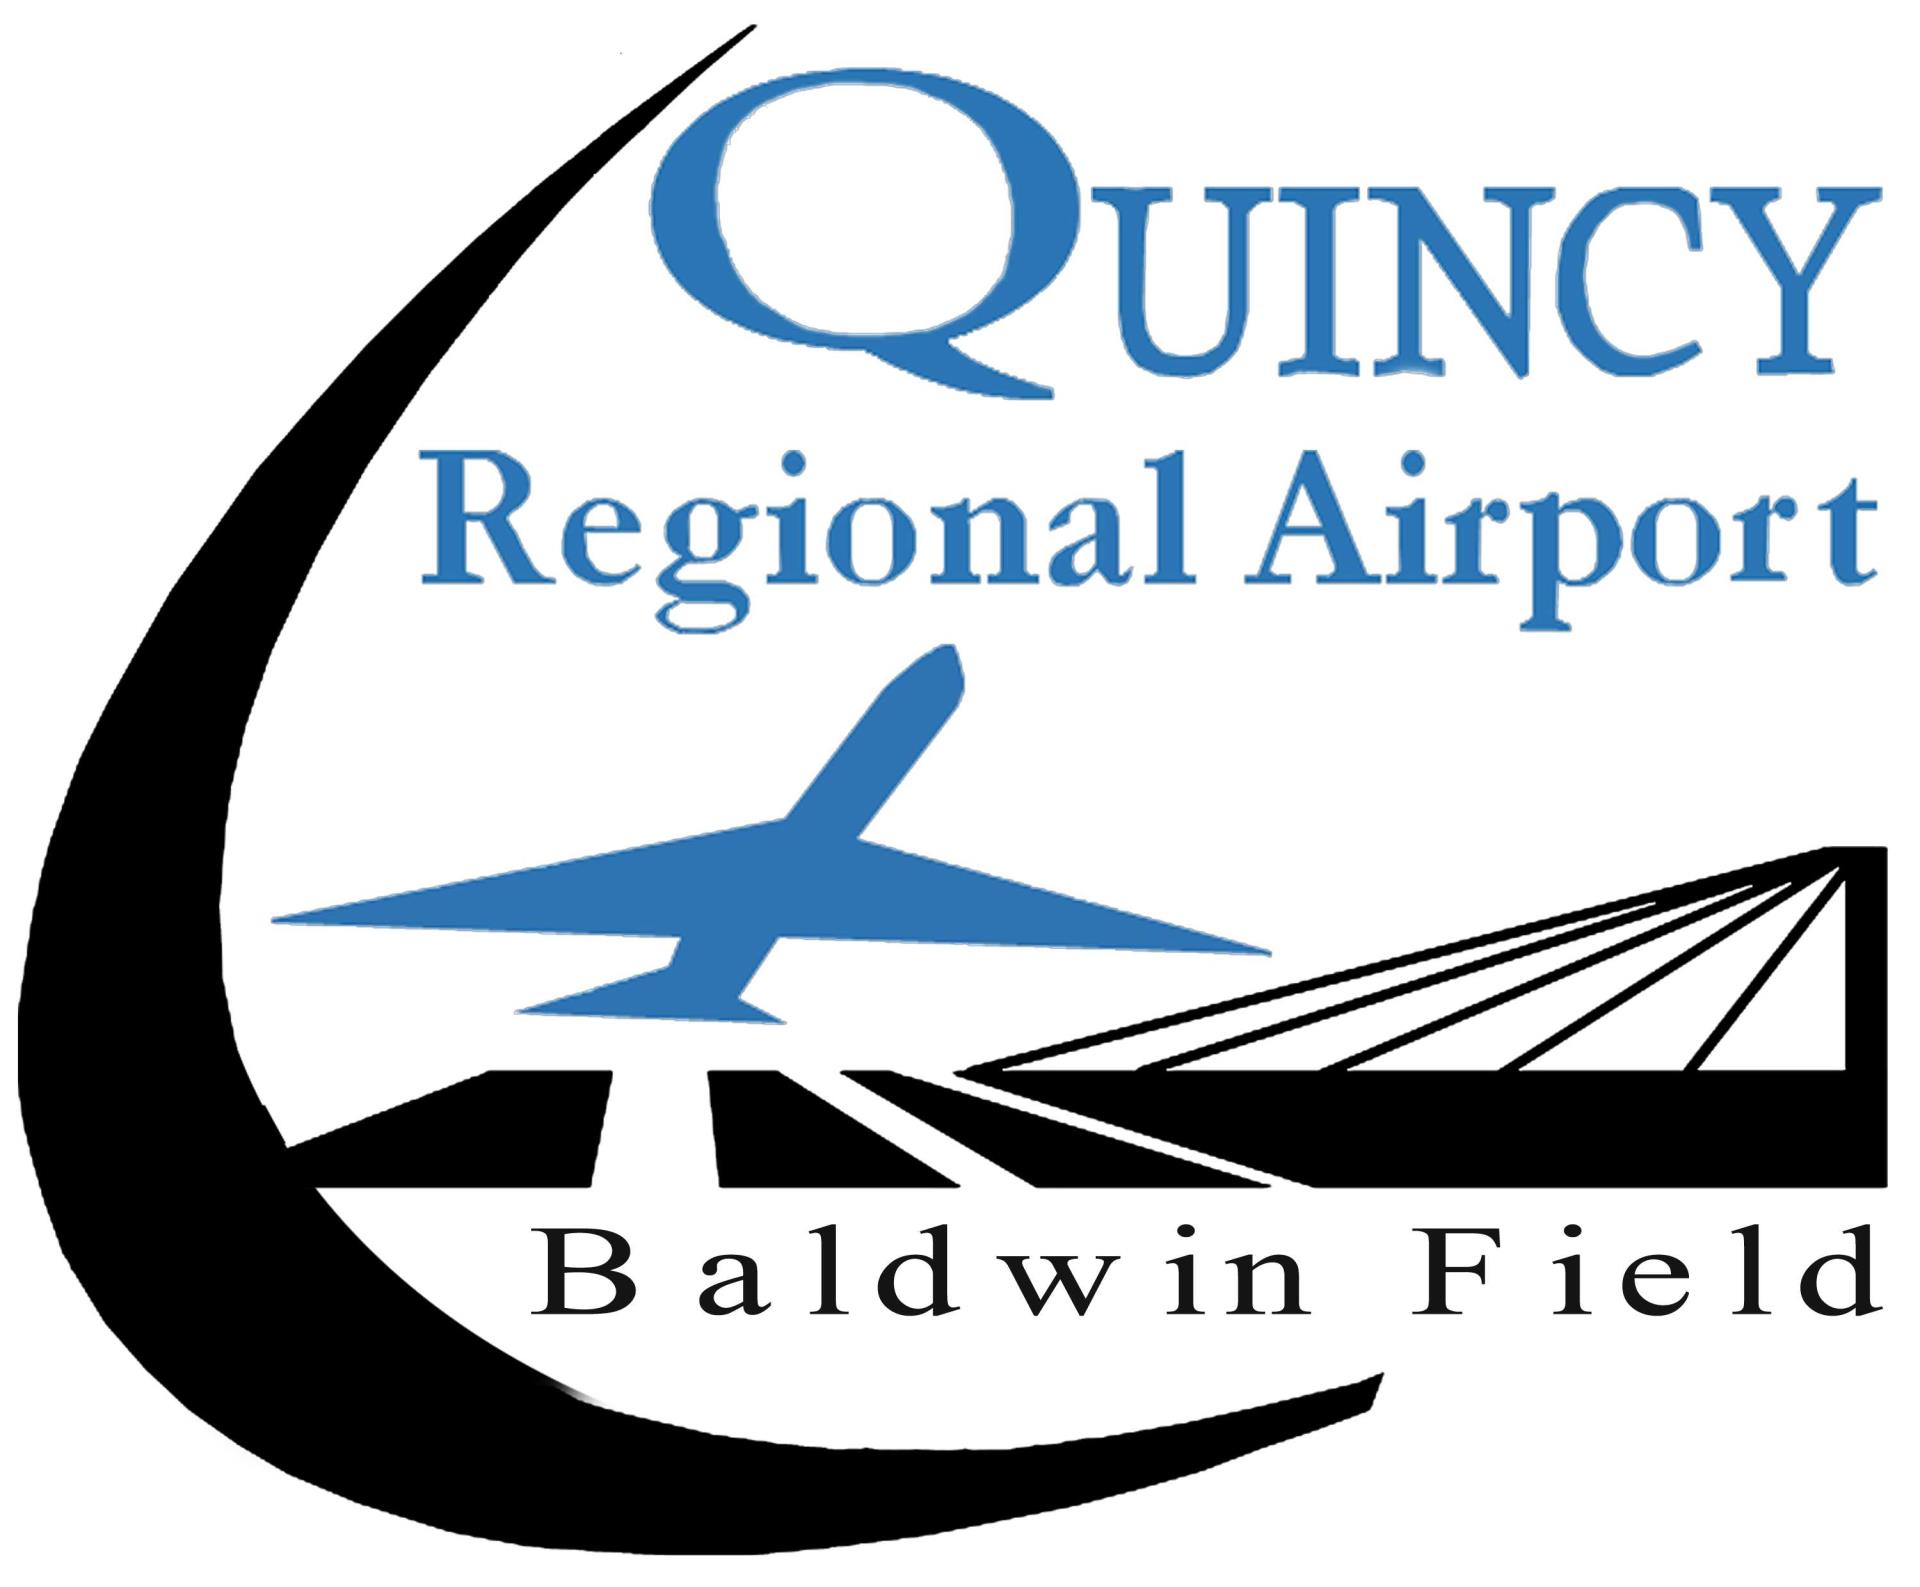 Quincy Regional Airport